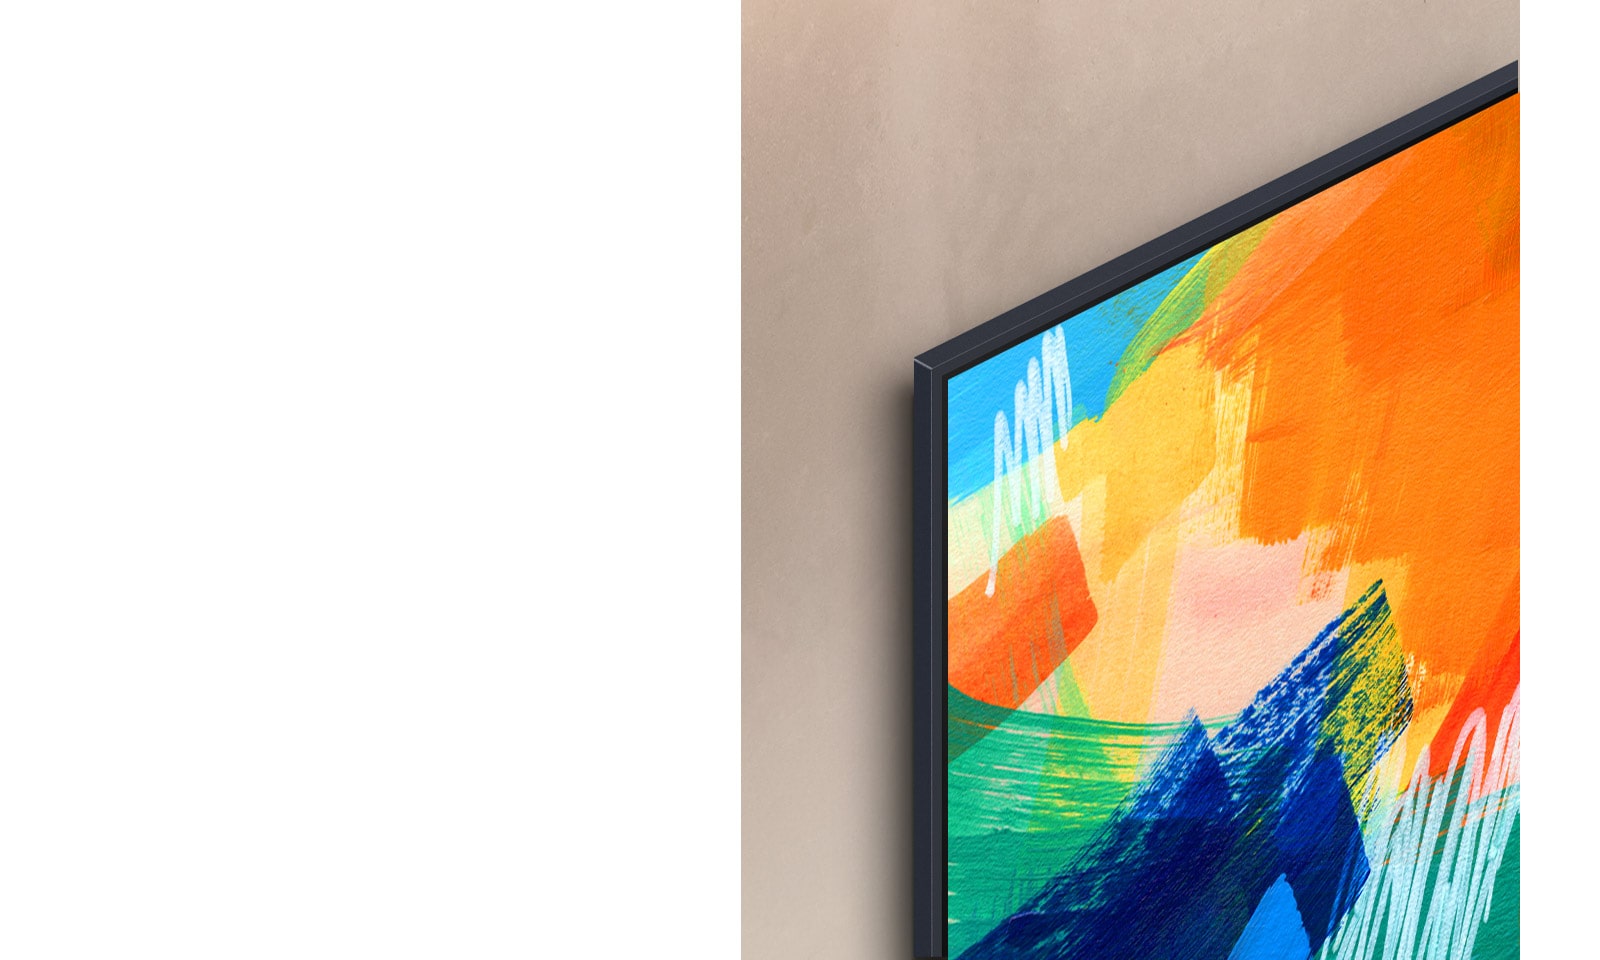 LG 電視的左上角展示著一件彩色的藝術品，電視安裝在牆上，幾乎沒有任何可見的縫隙。